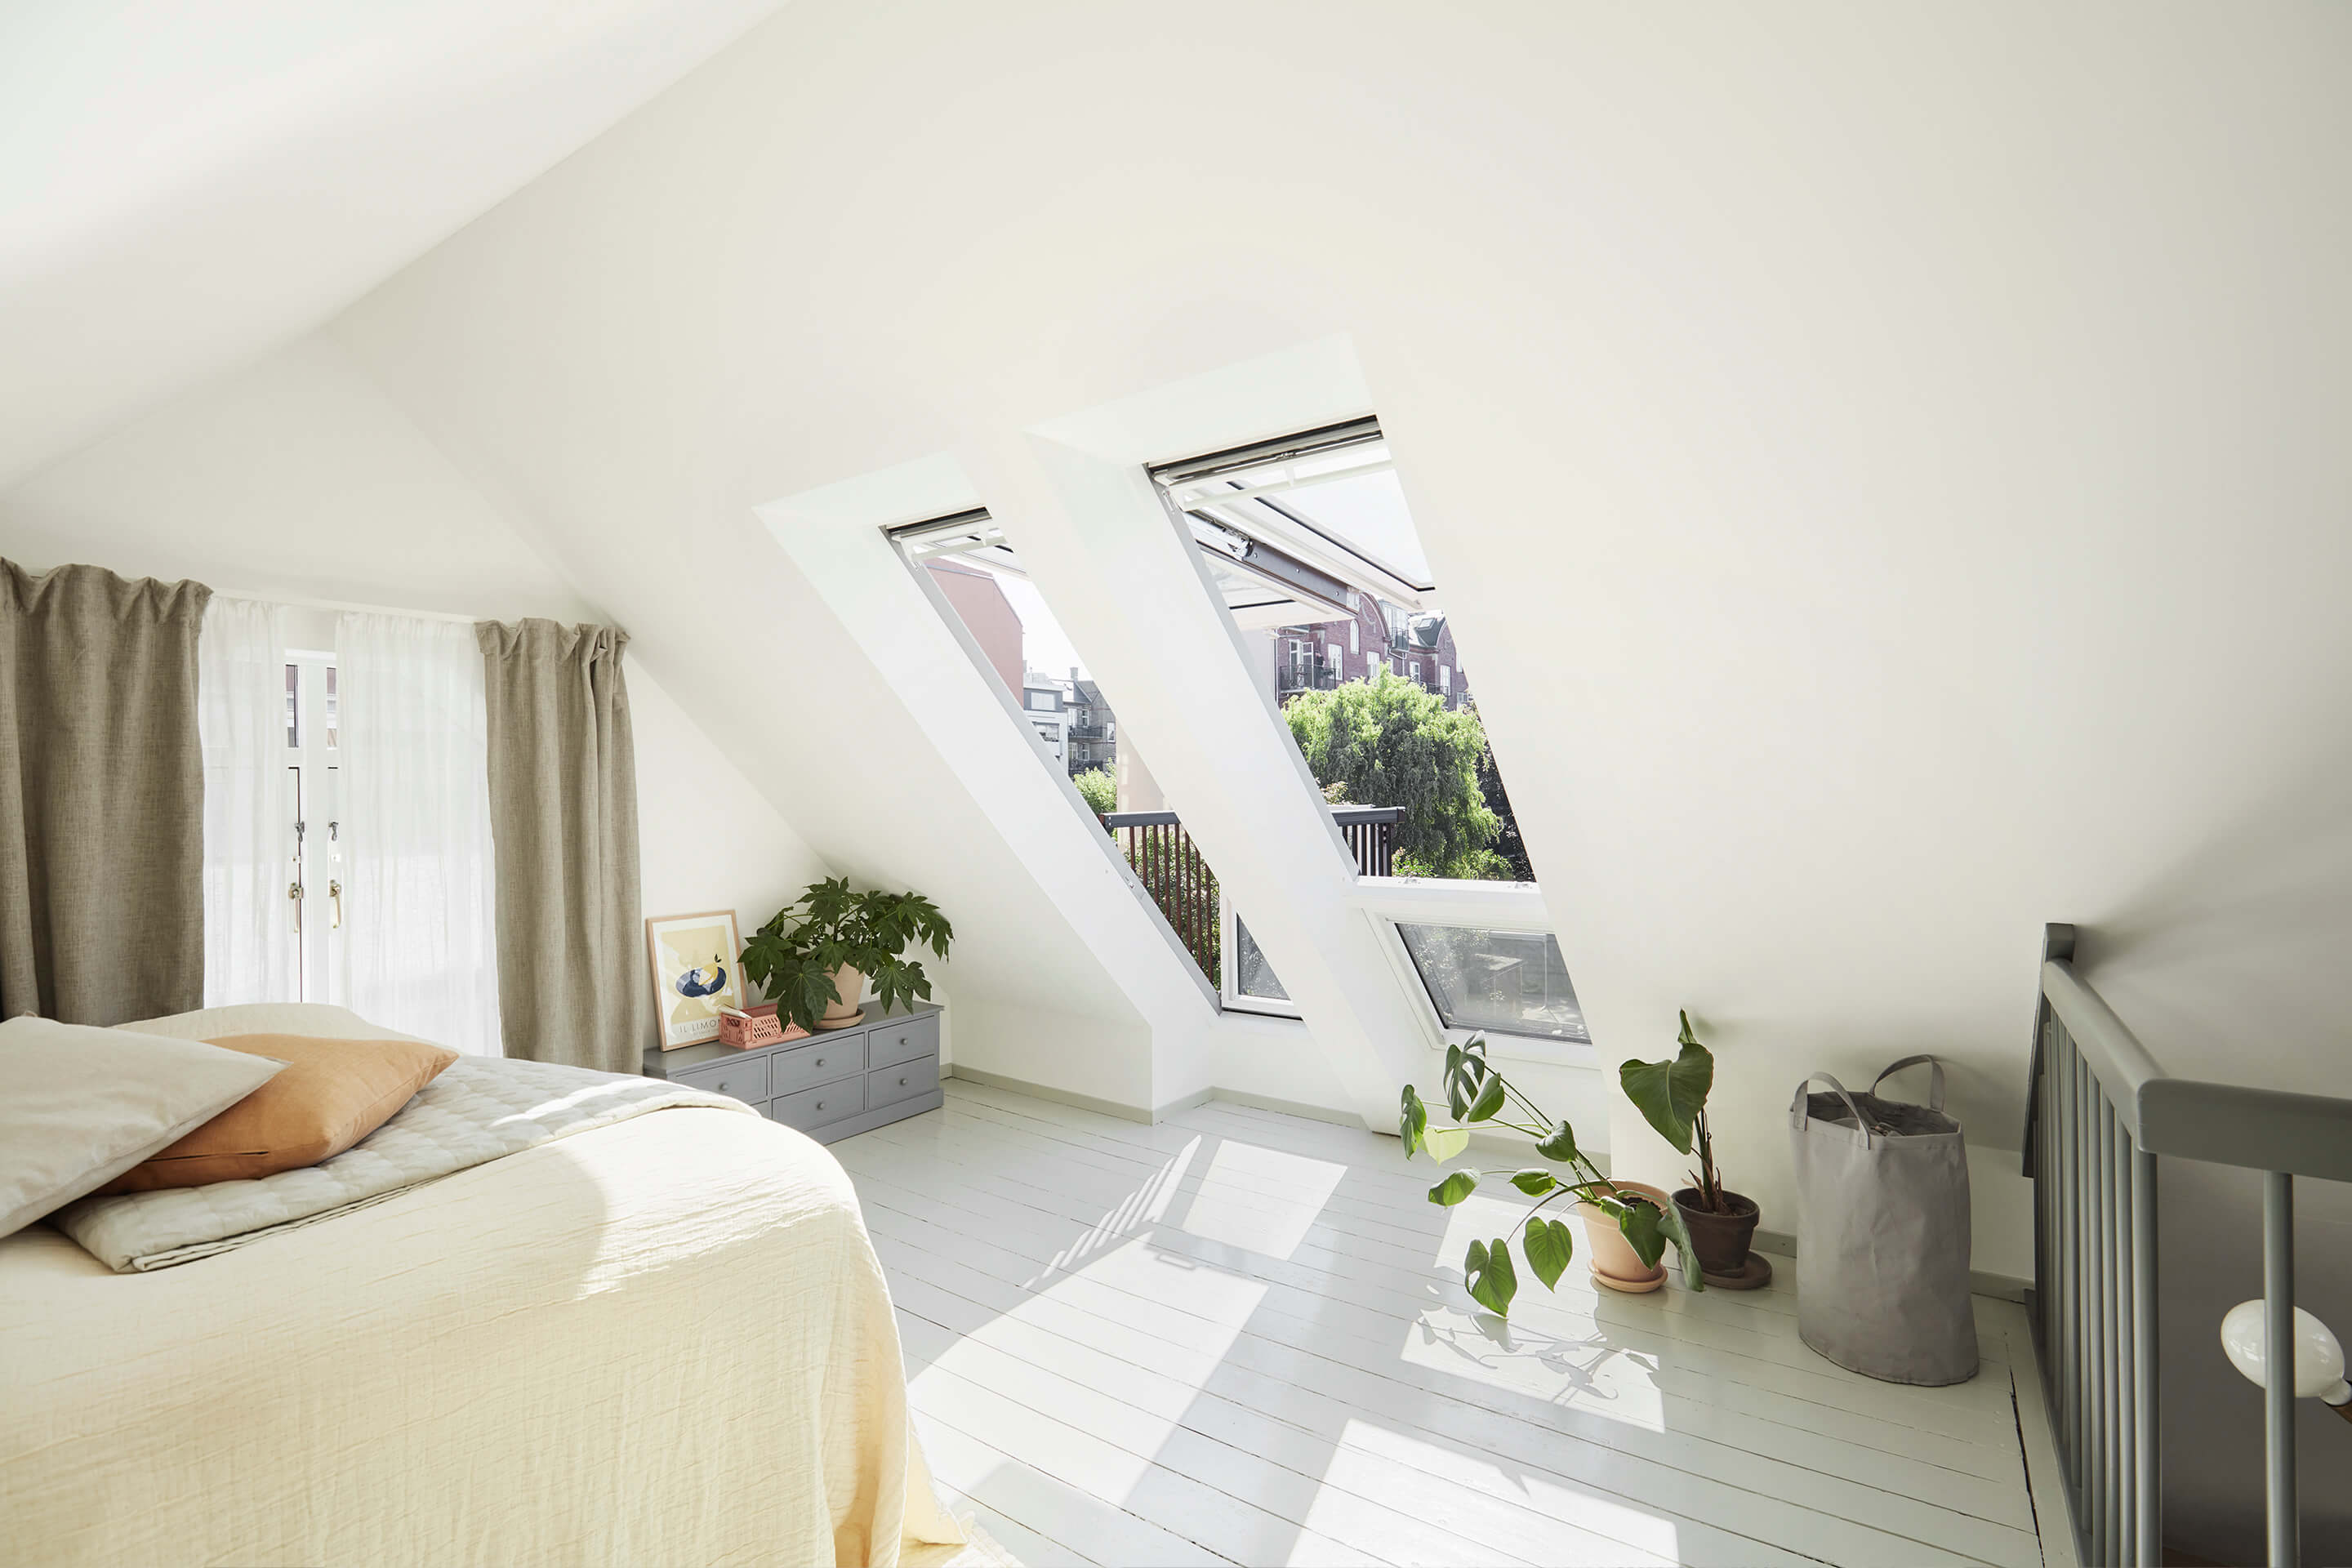 Accogliente camera da letto mansarda con finestre per tetti VELUX e arredamento minimalista.